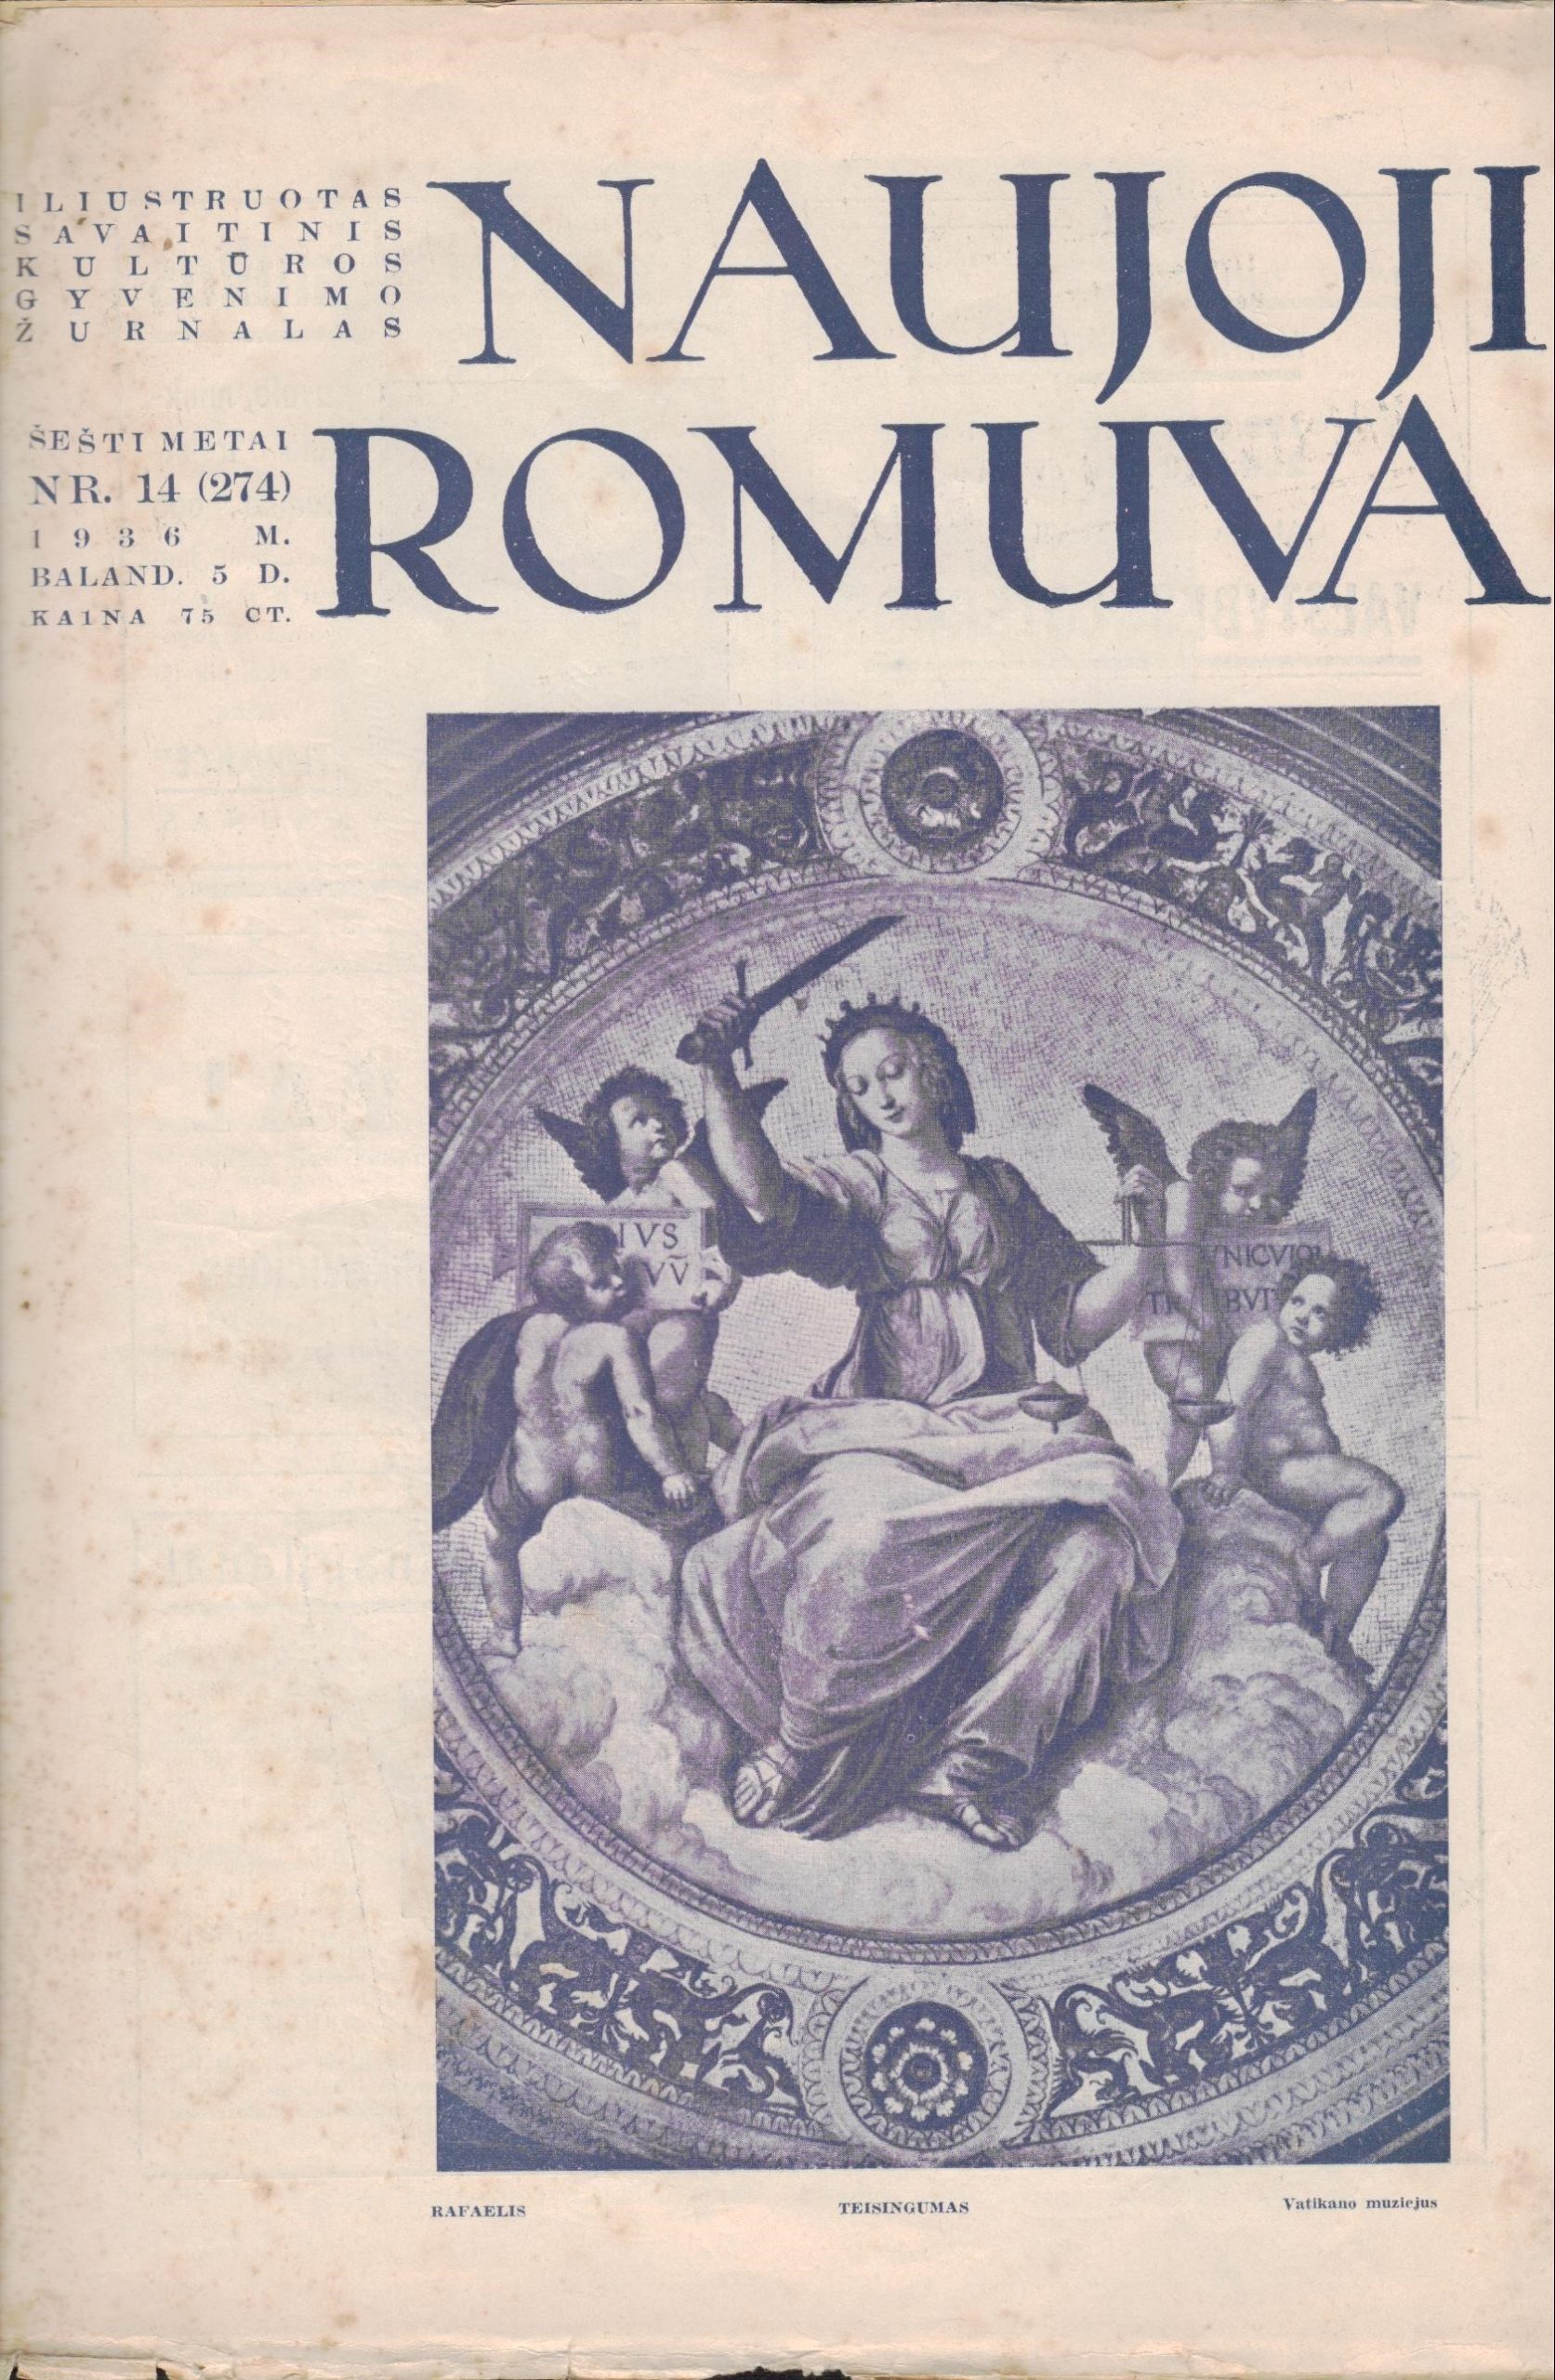 Naujoji Romuva. Iliustruotas savaitinis kultūros gyvenimo žurnalas. 1936 m., balandis. Nr. 14. (274). MLLM P65634